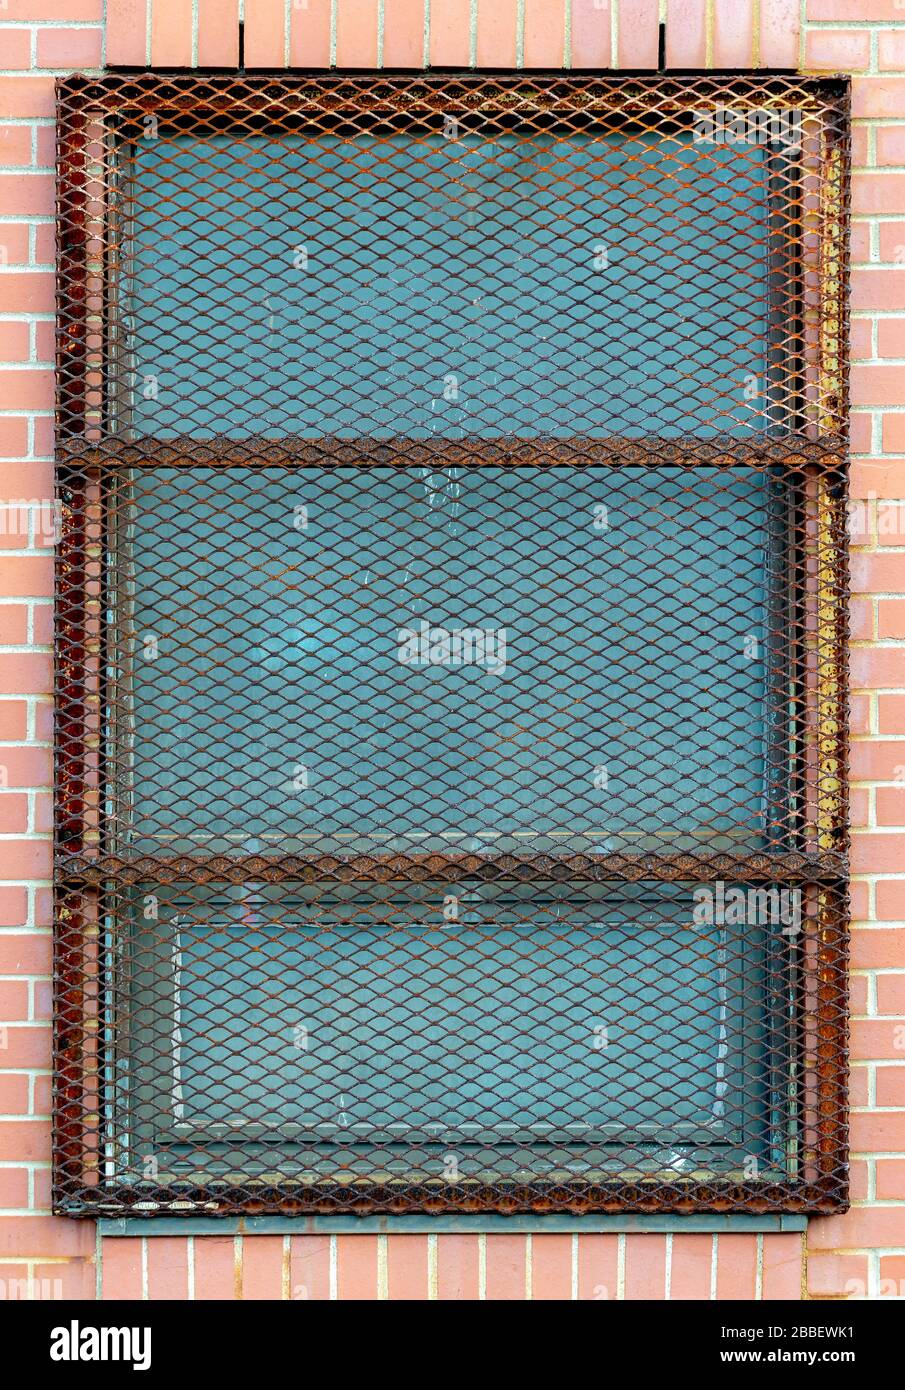 Un écran en métal lourd protégeant la fenêtre dans un bâtiment en brique. L'écran est en forme de losange et rouillé. Banque D'Images